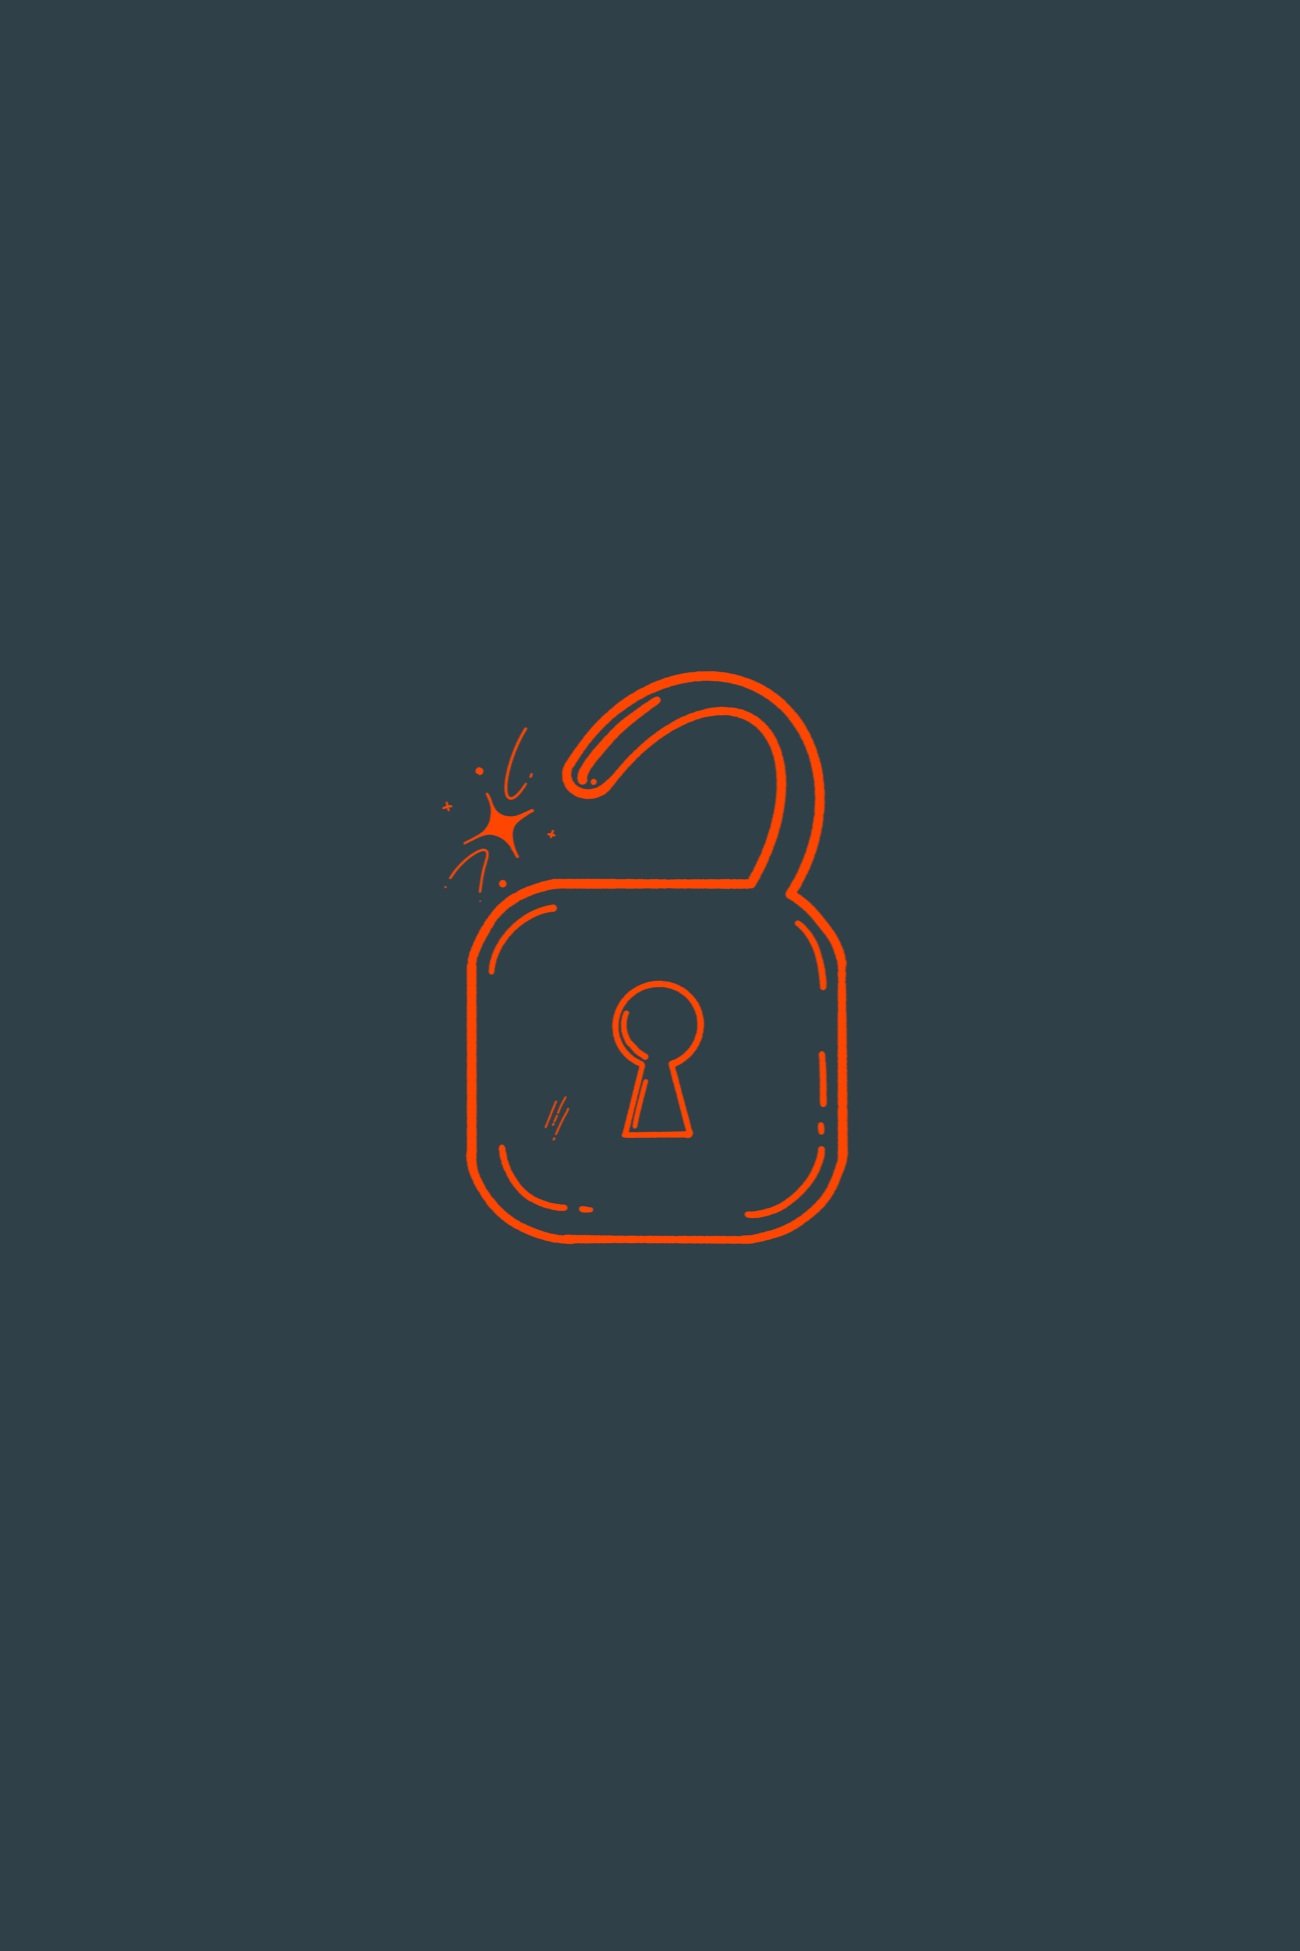 Logo Design: Lock